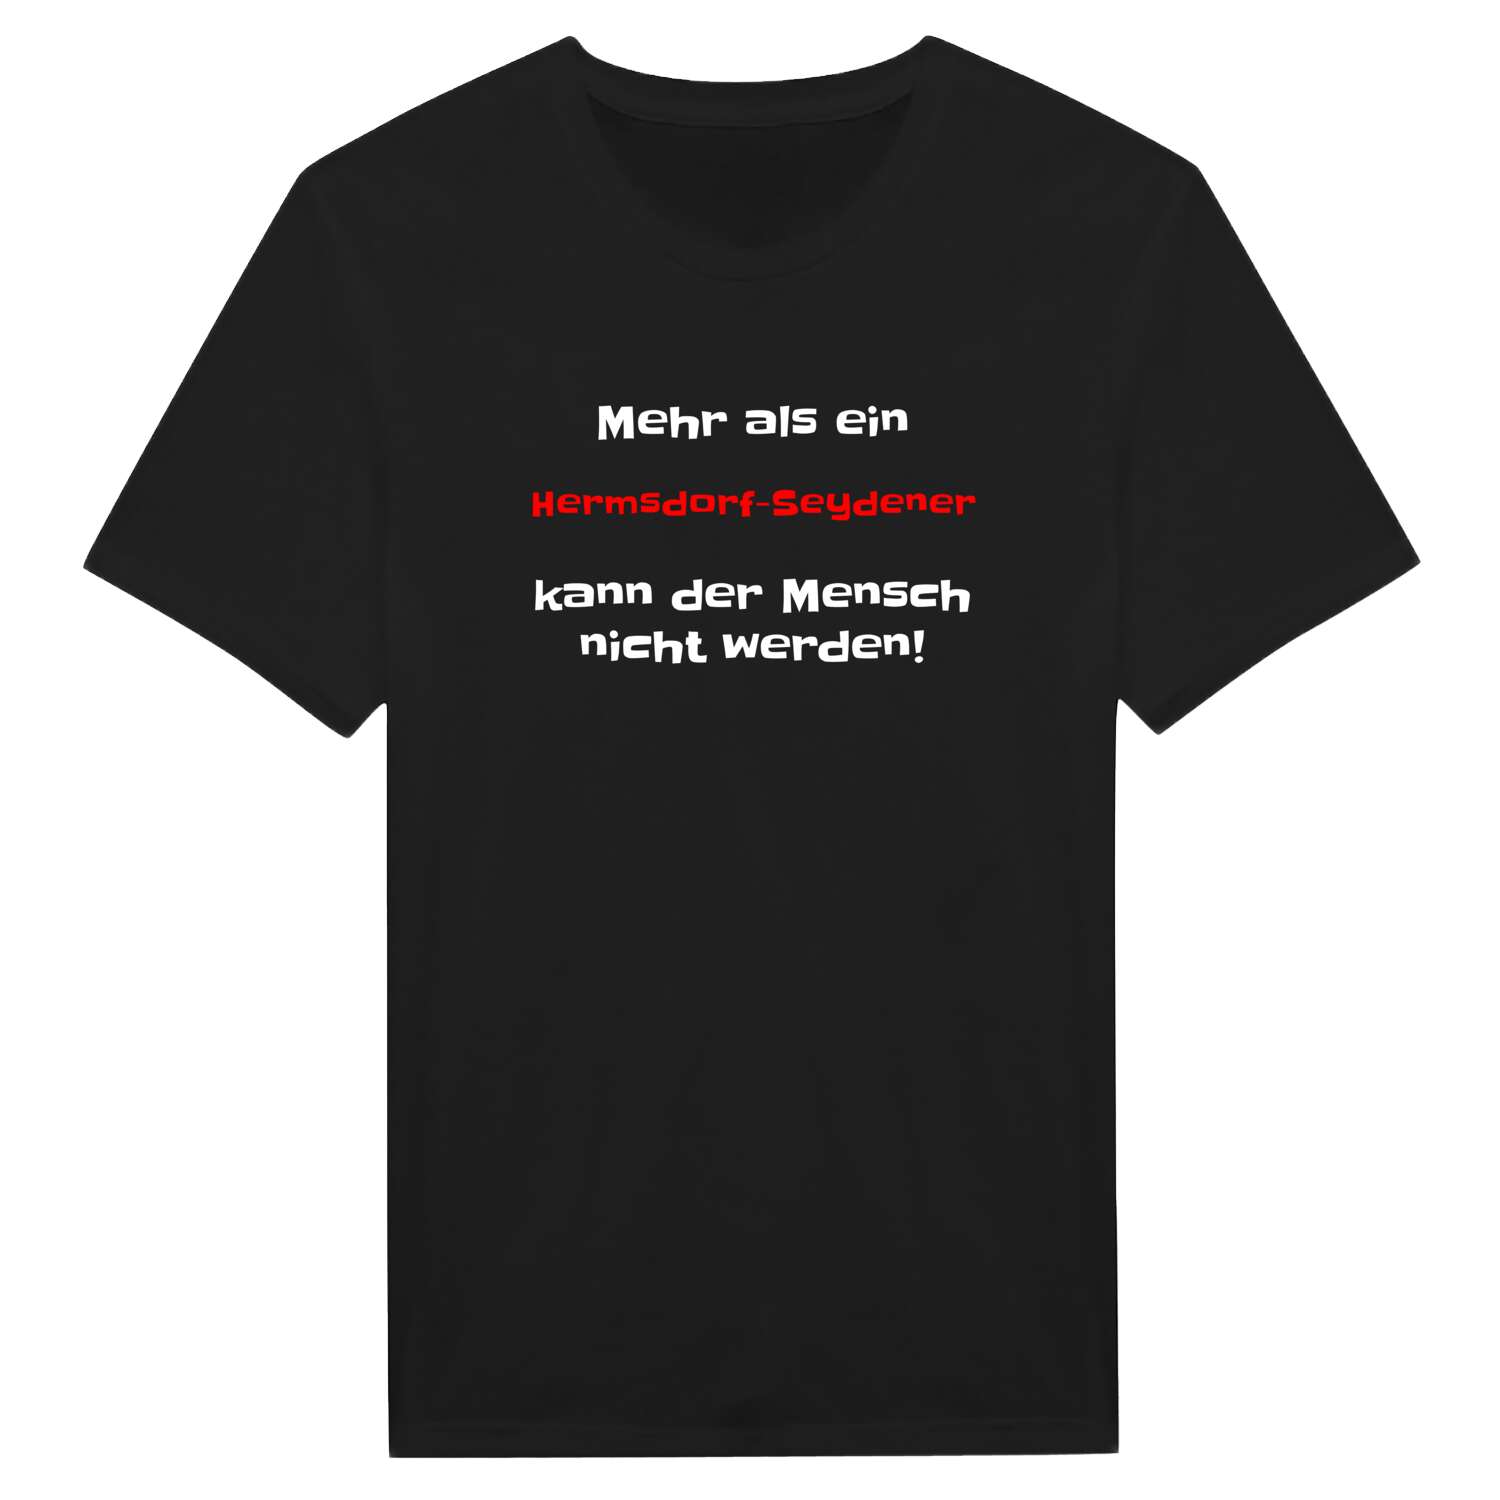 Hermsdorf-Seyde T-Shirt »Mehr als ein«